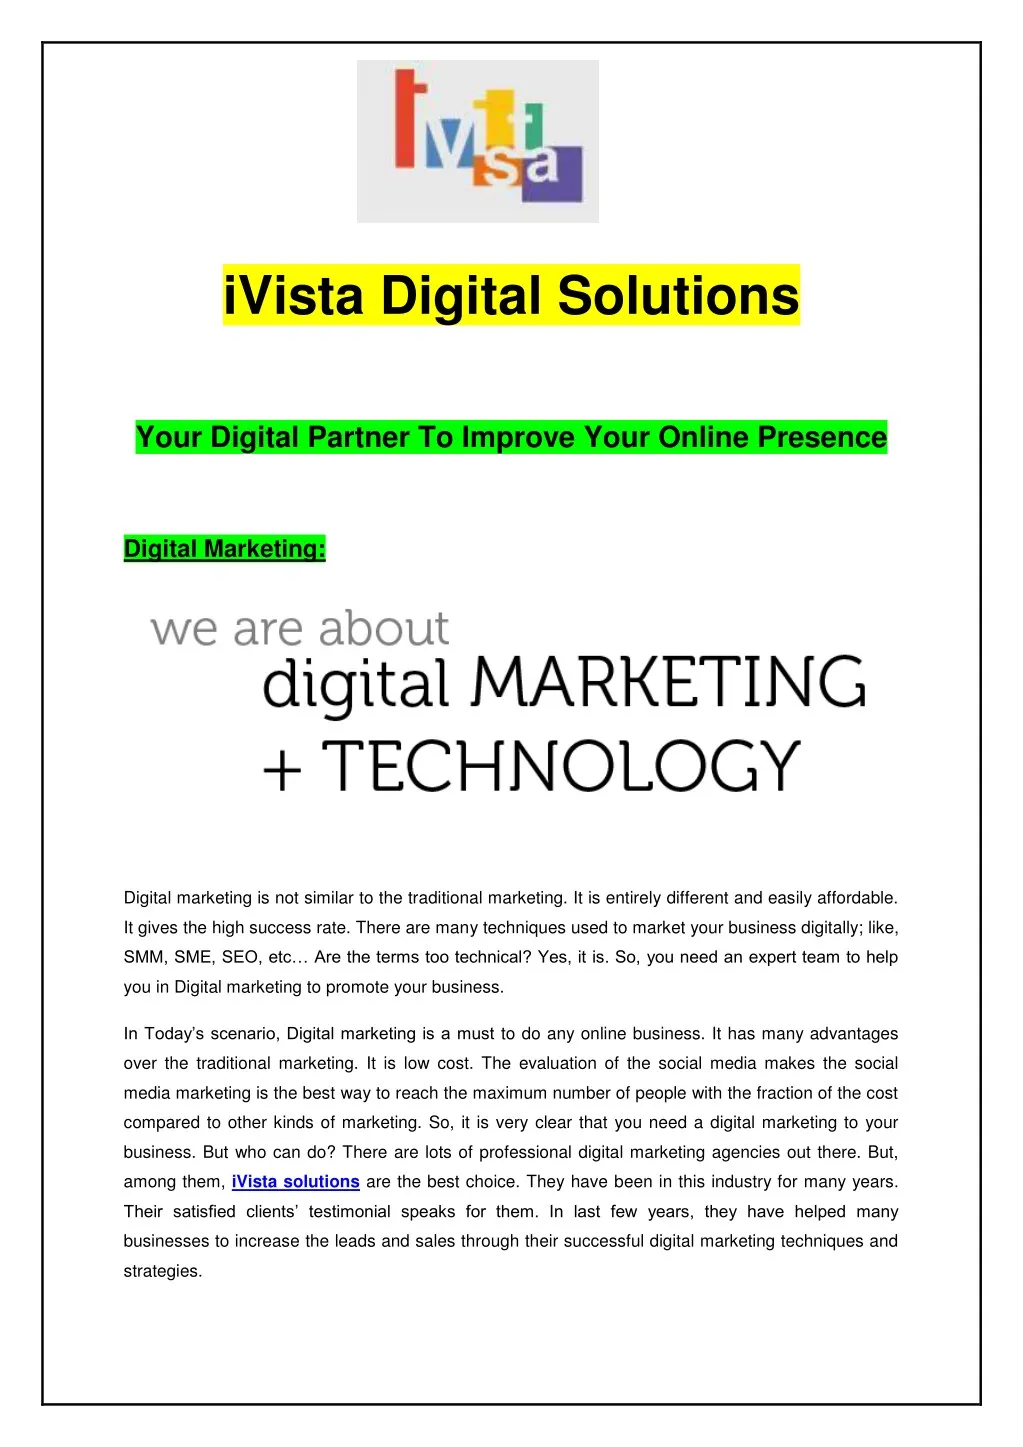 ivista digital solutions